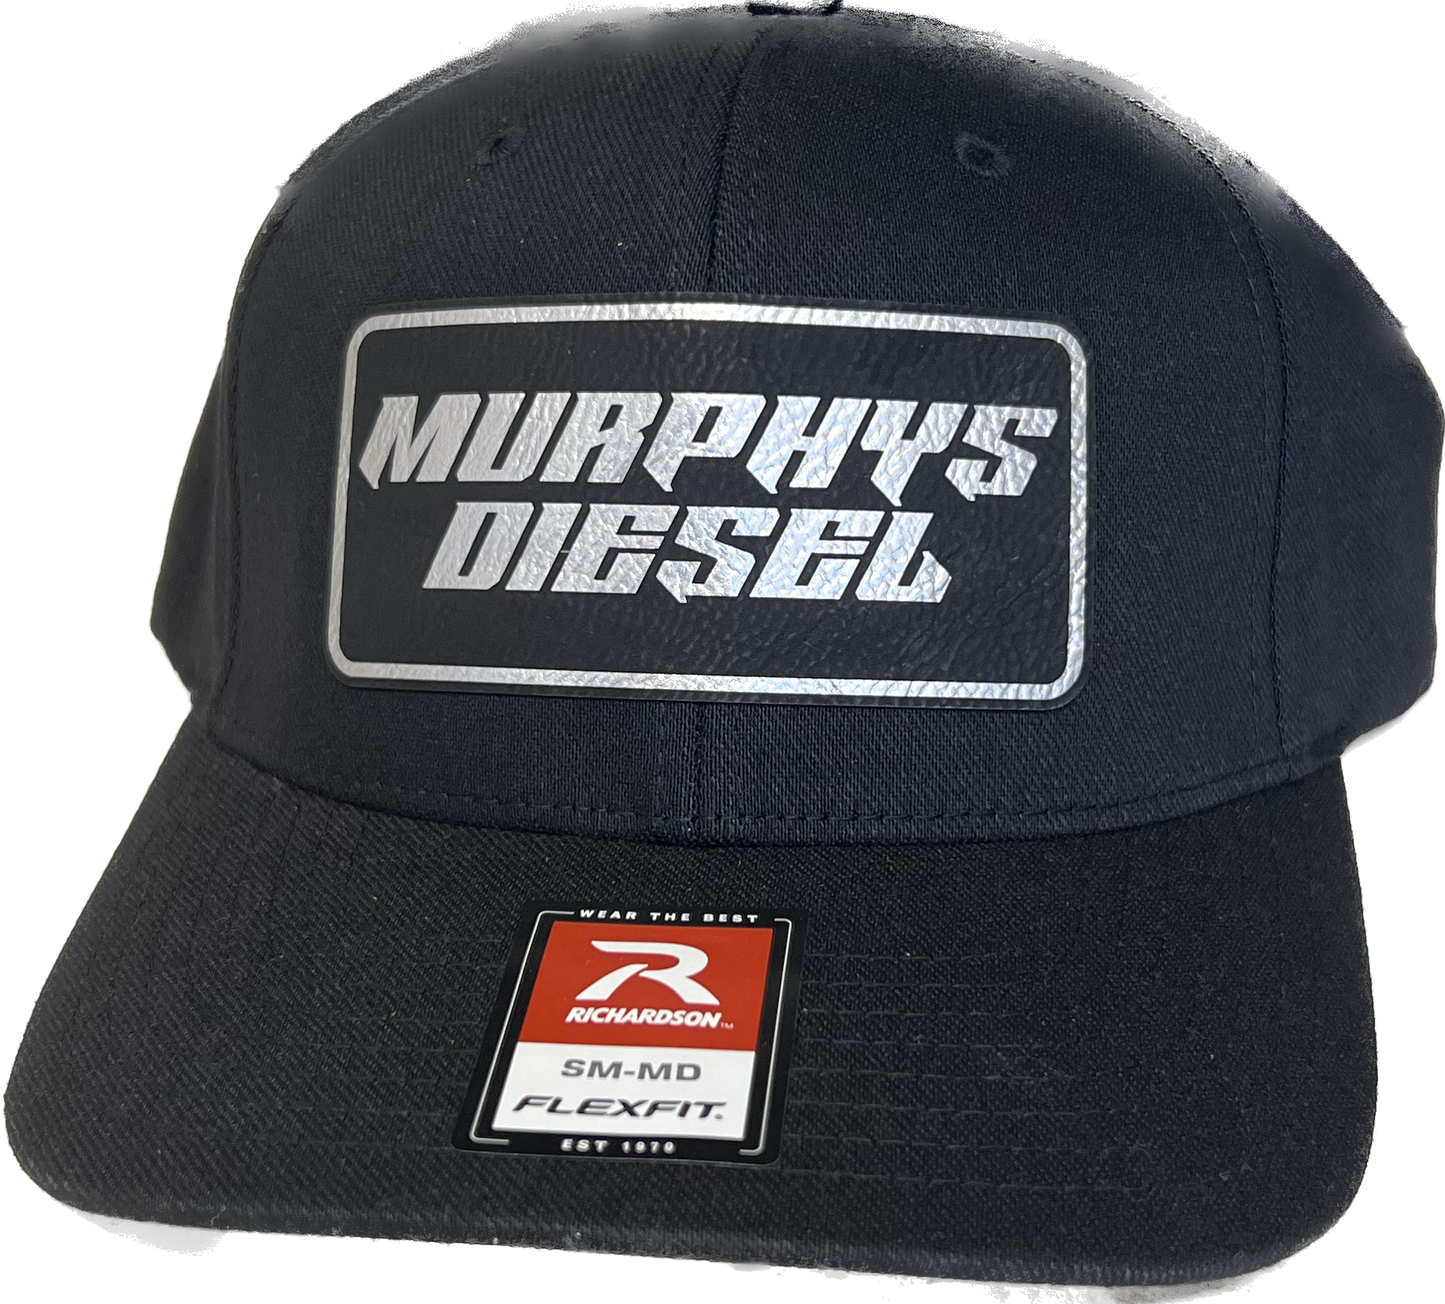 Murphys Diesel Flexfit Richardson 6 Panel Hat